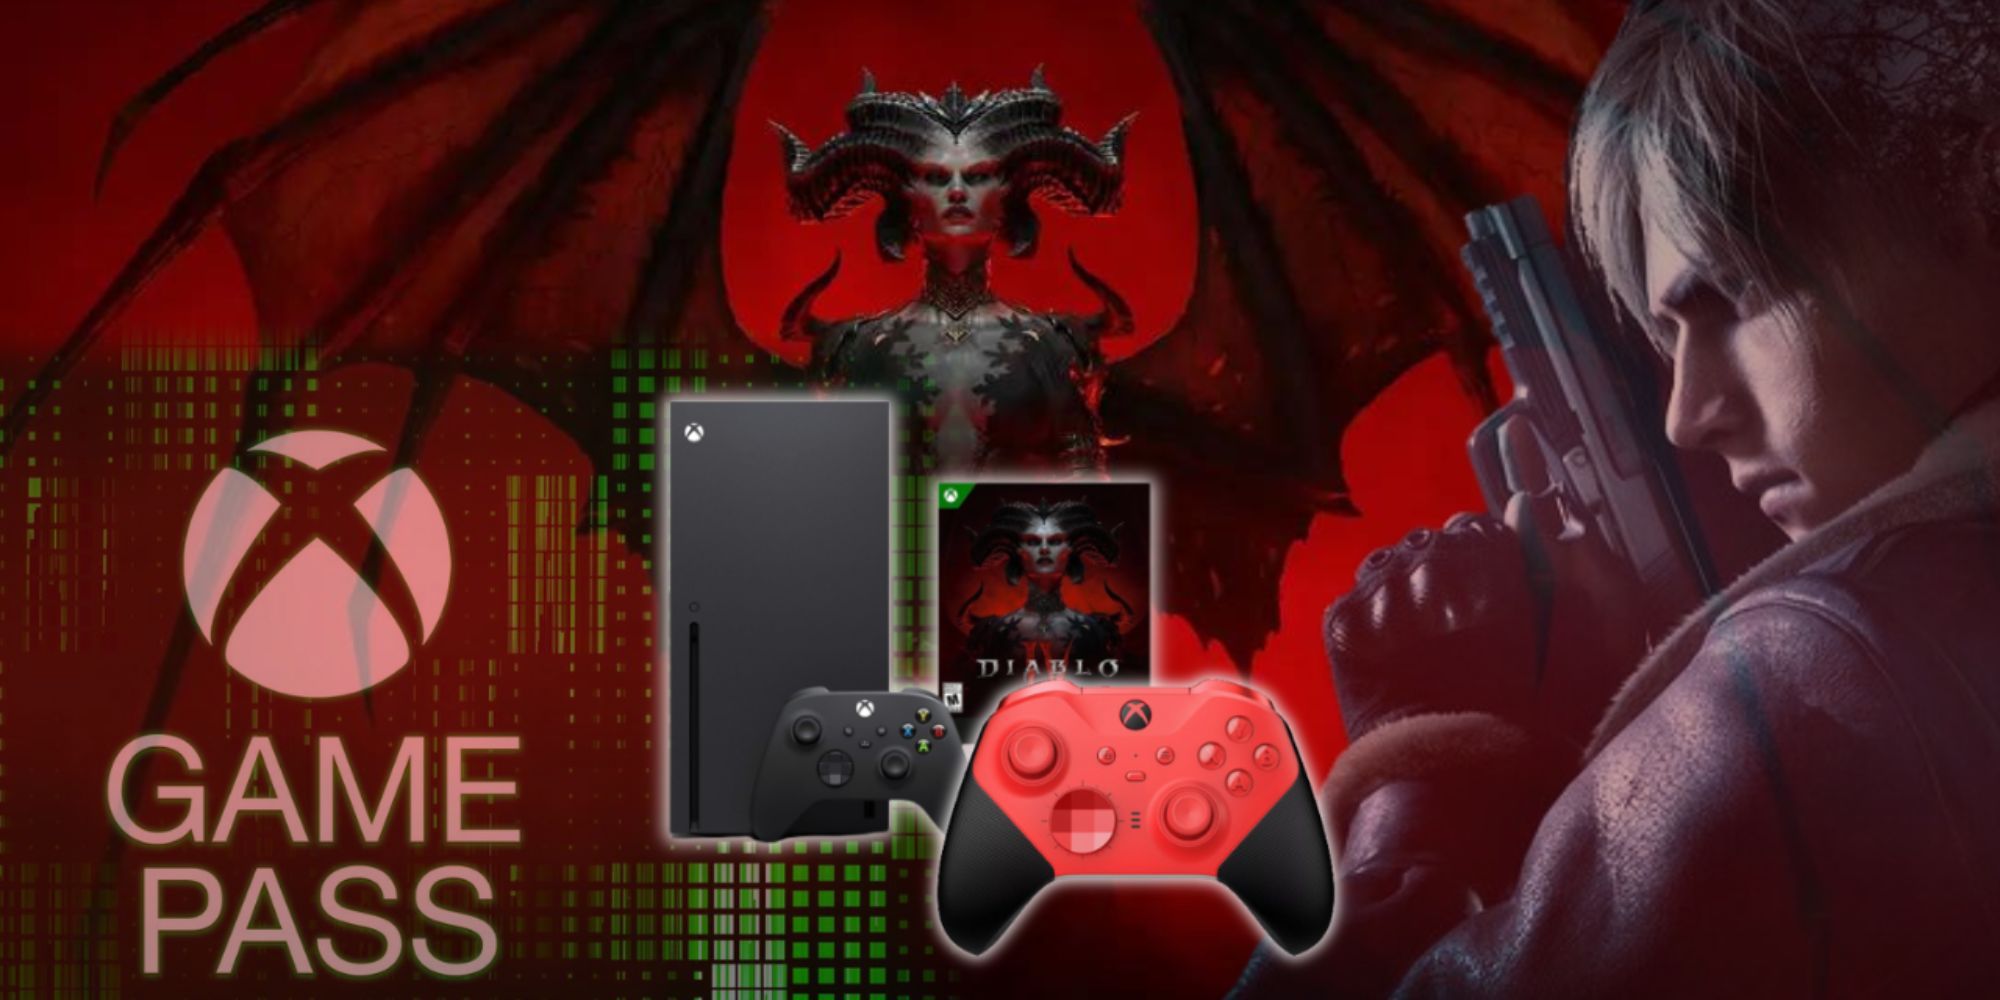 Game Pass 로고와 Xbox 제품을 둘러싸고 있는 Diablo 4의 Lilith와 Resident Evil 4의 Leon의 혼합 이미지